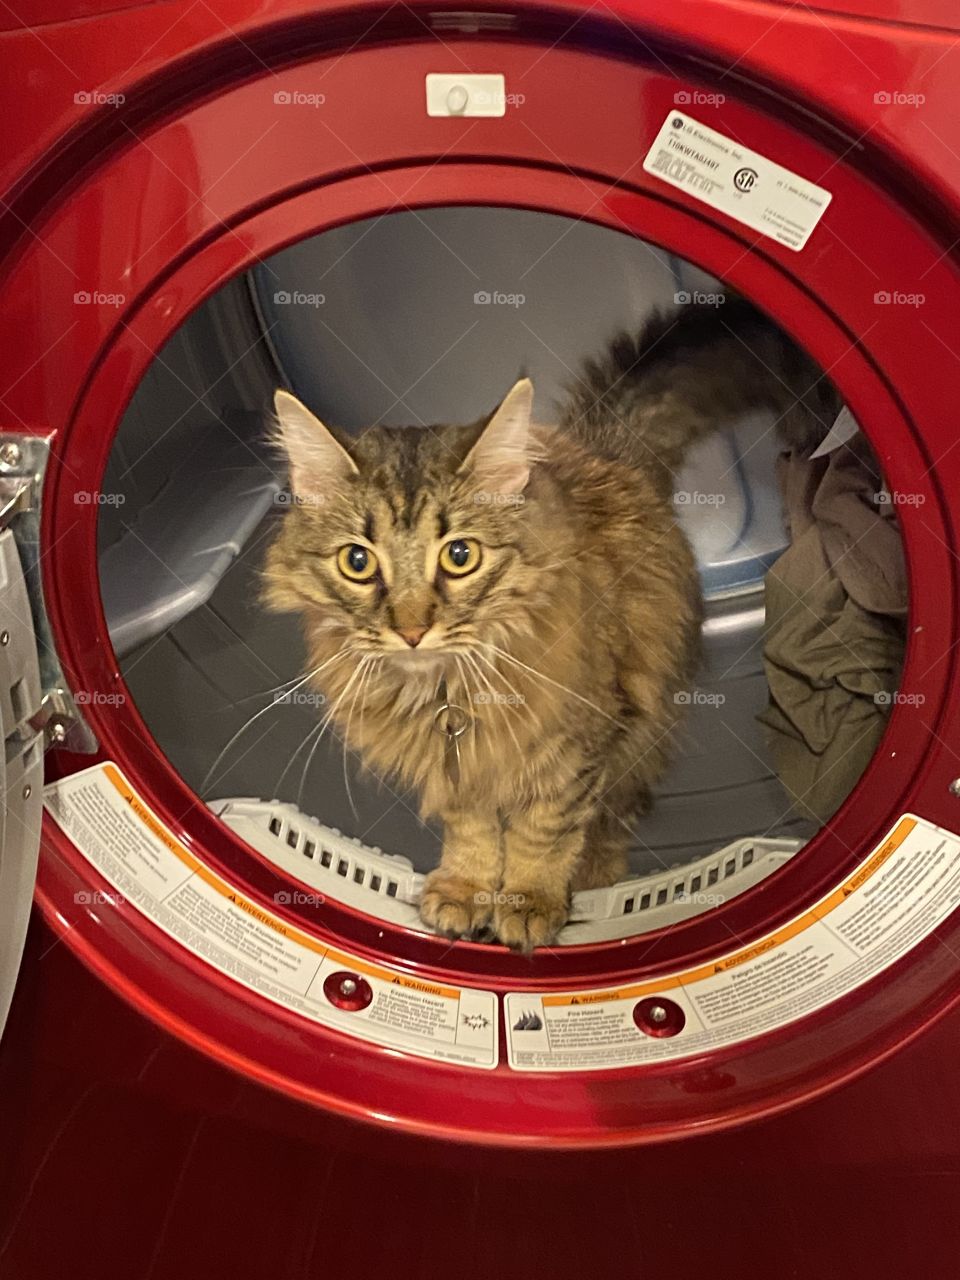 Cat in dryer